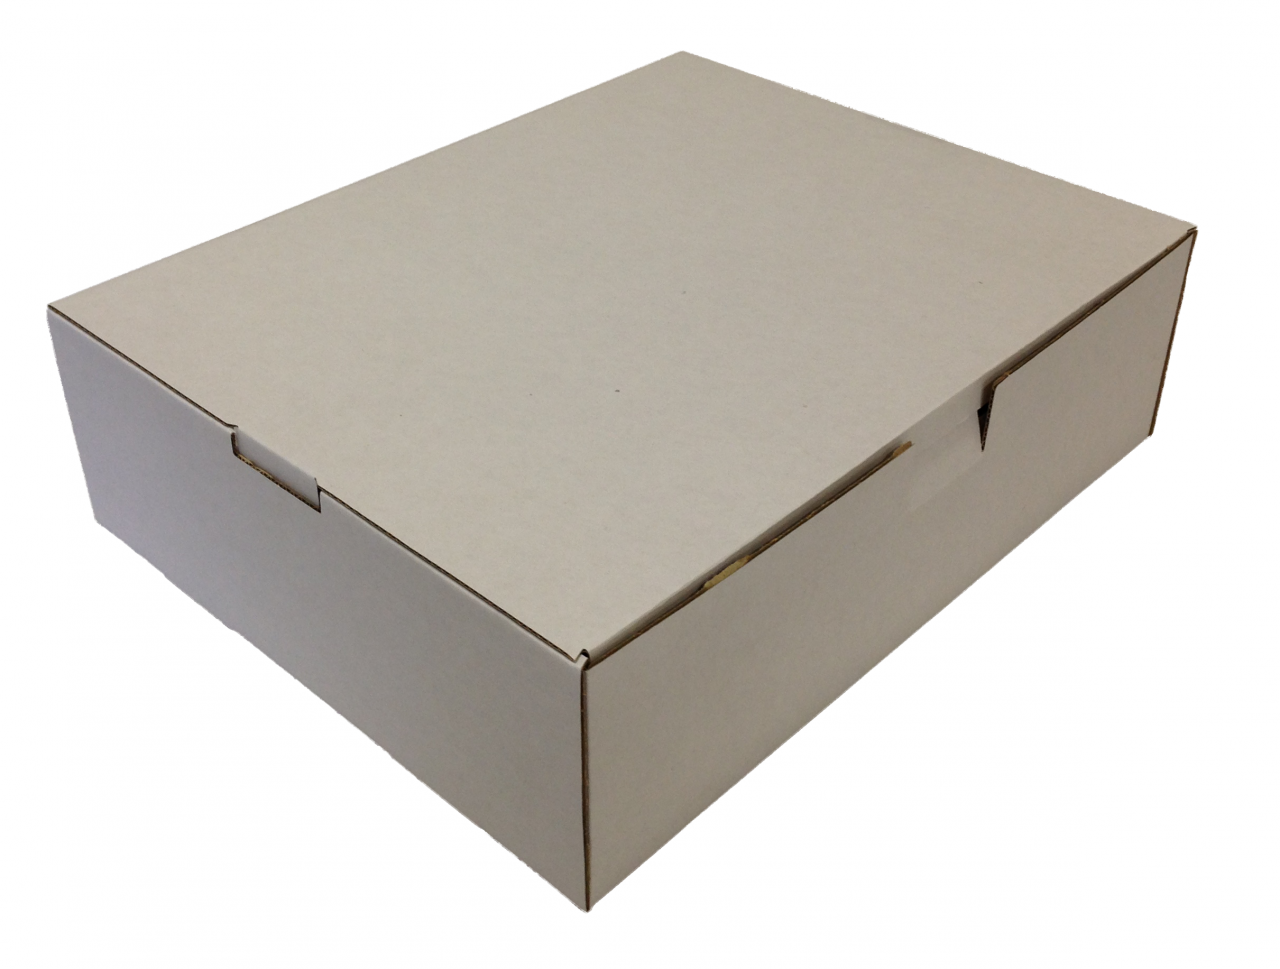 Közepes méretű önzáró tároló doboz (290x235x85 mm) Közepes méretű, önzáródó, hullámkarton tároló doboz felnyitható tetővel

Felhasználás: 
Ajándéktárgyak, szerszámok, szerelvények, egyéb kisméretű tárgyak tárolására alkalmas közepes méretű önzáródó hullámkarton tároló doboz.

Méret: 290 x 235 x 85 mm - hullámkarton tároló doboz

Anyag: mikrohullám karton papír
Színek: 
alap: barna, fehér
színes: bordó, fekete, kék, zöld